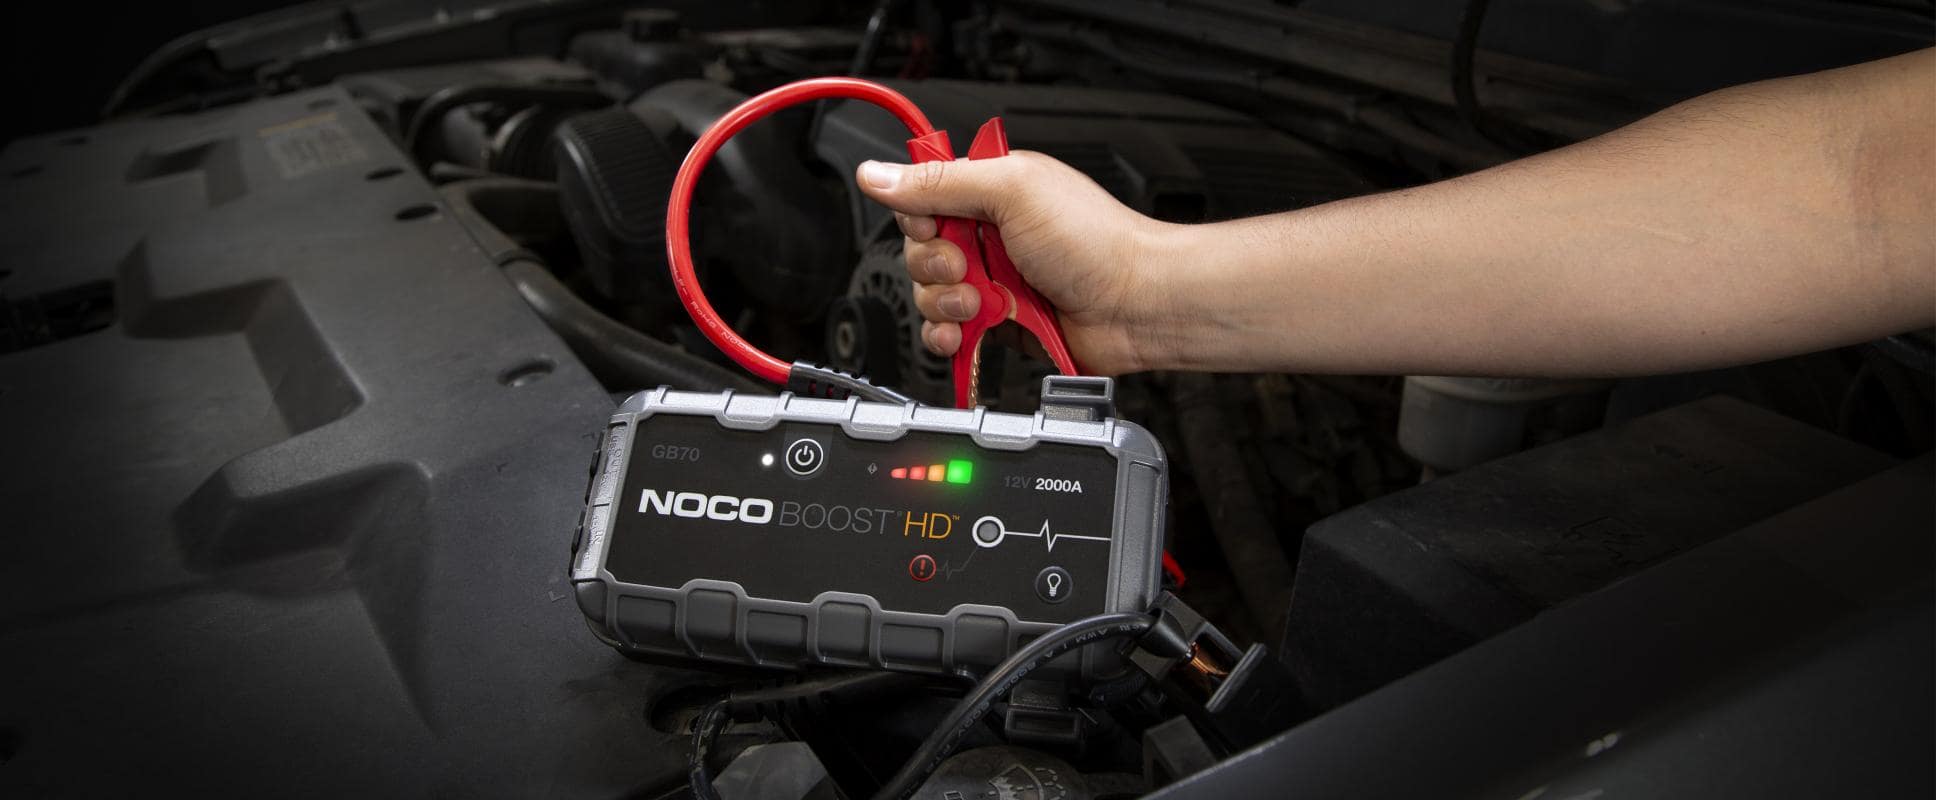 バッテリー ジャンプスターター NOCO genius BOOST GB70（リチウムイオン電池内蔵）12V 鉛電池用